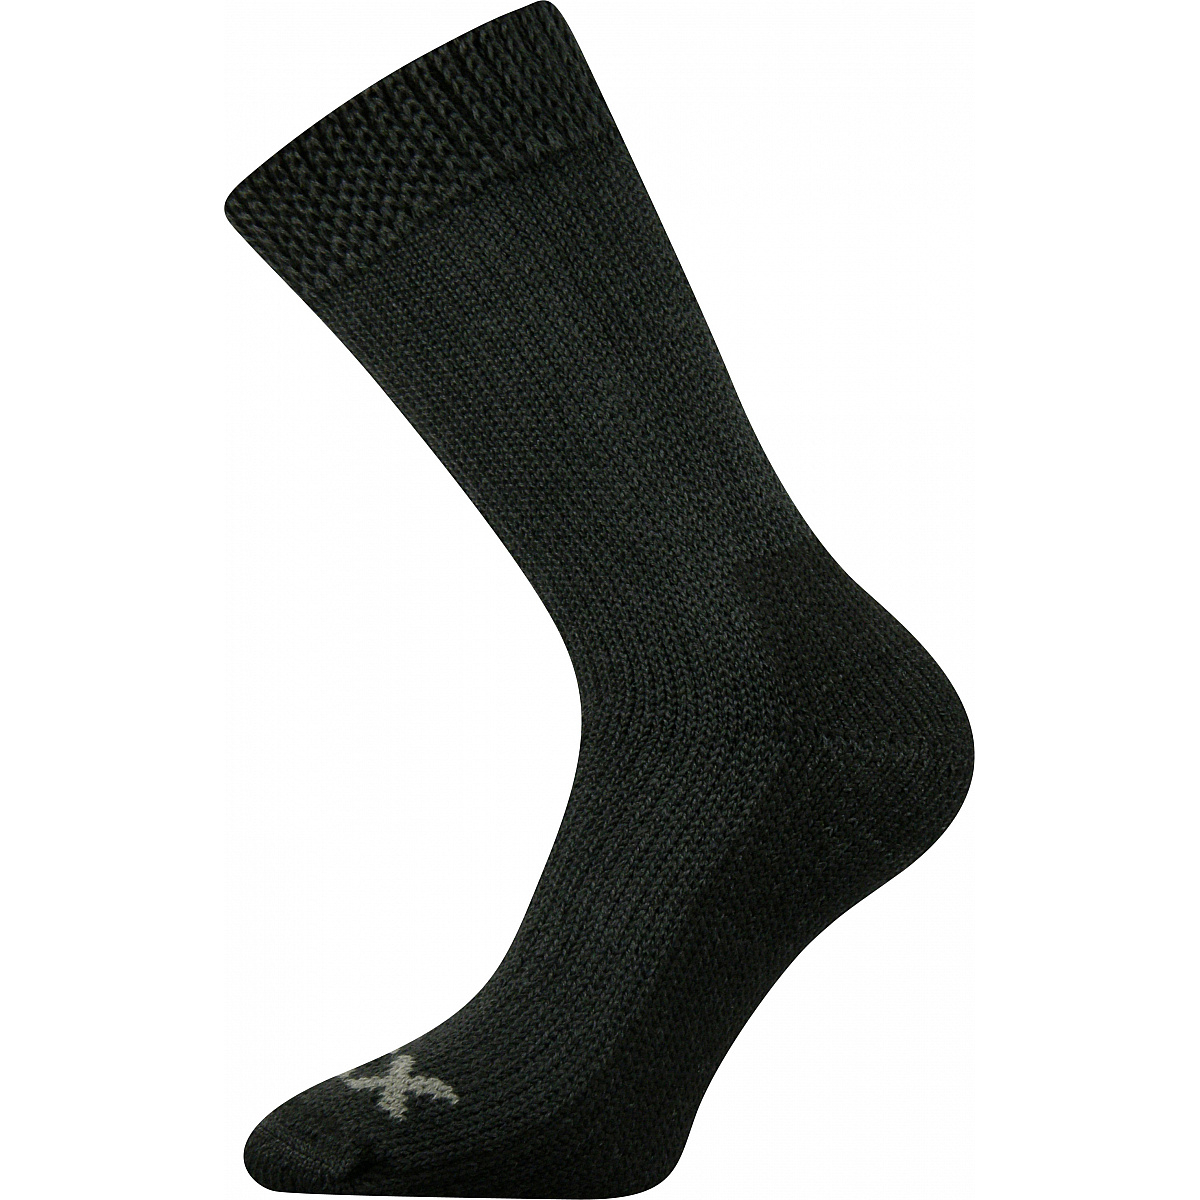 Extra teplé vlněné ponožky Voxx Alpin - tmavě šedé, 39-42